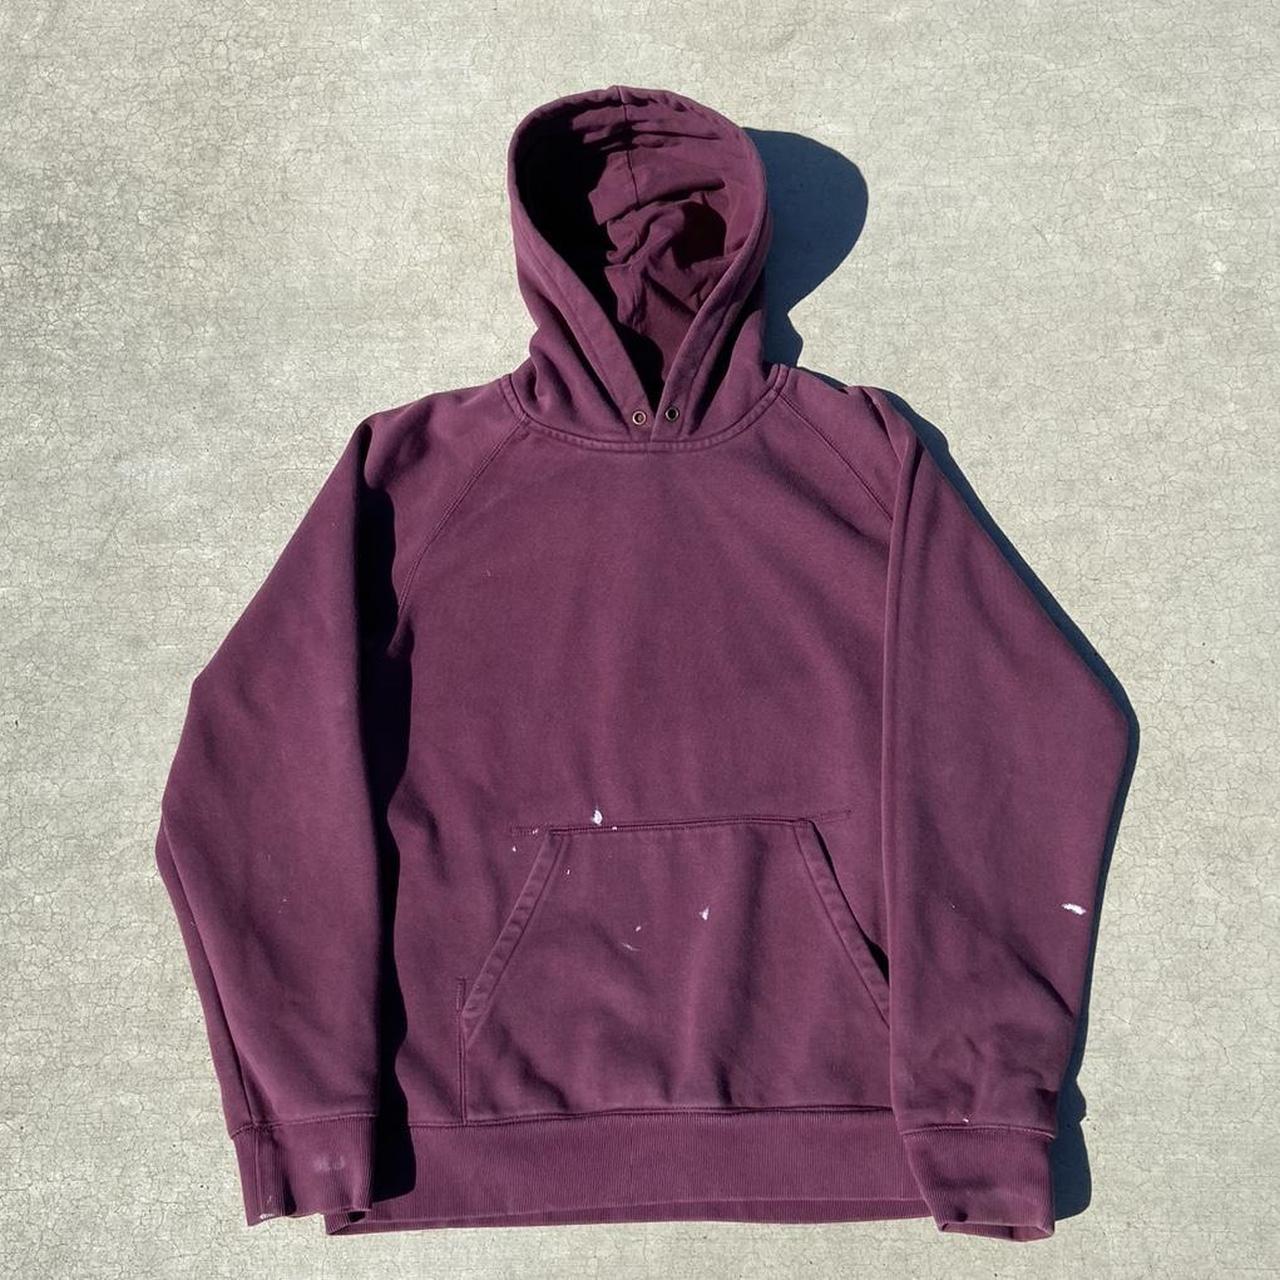 Essential Carhartt WIP hoodie! Size Large... - Depop